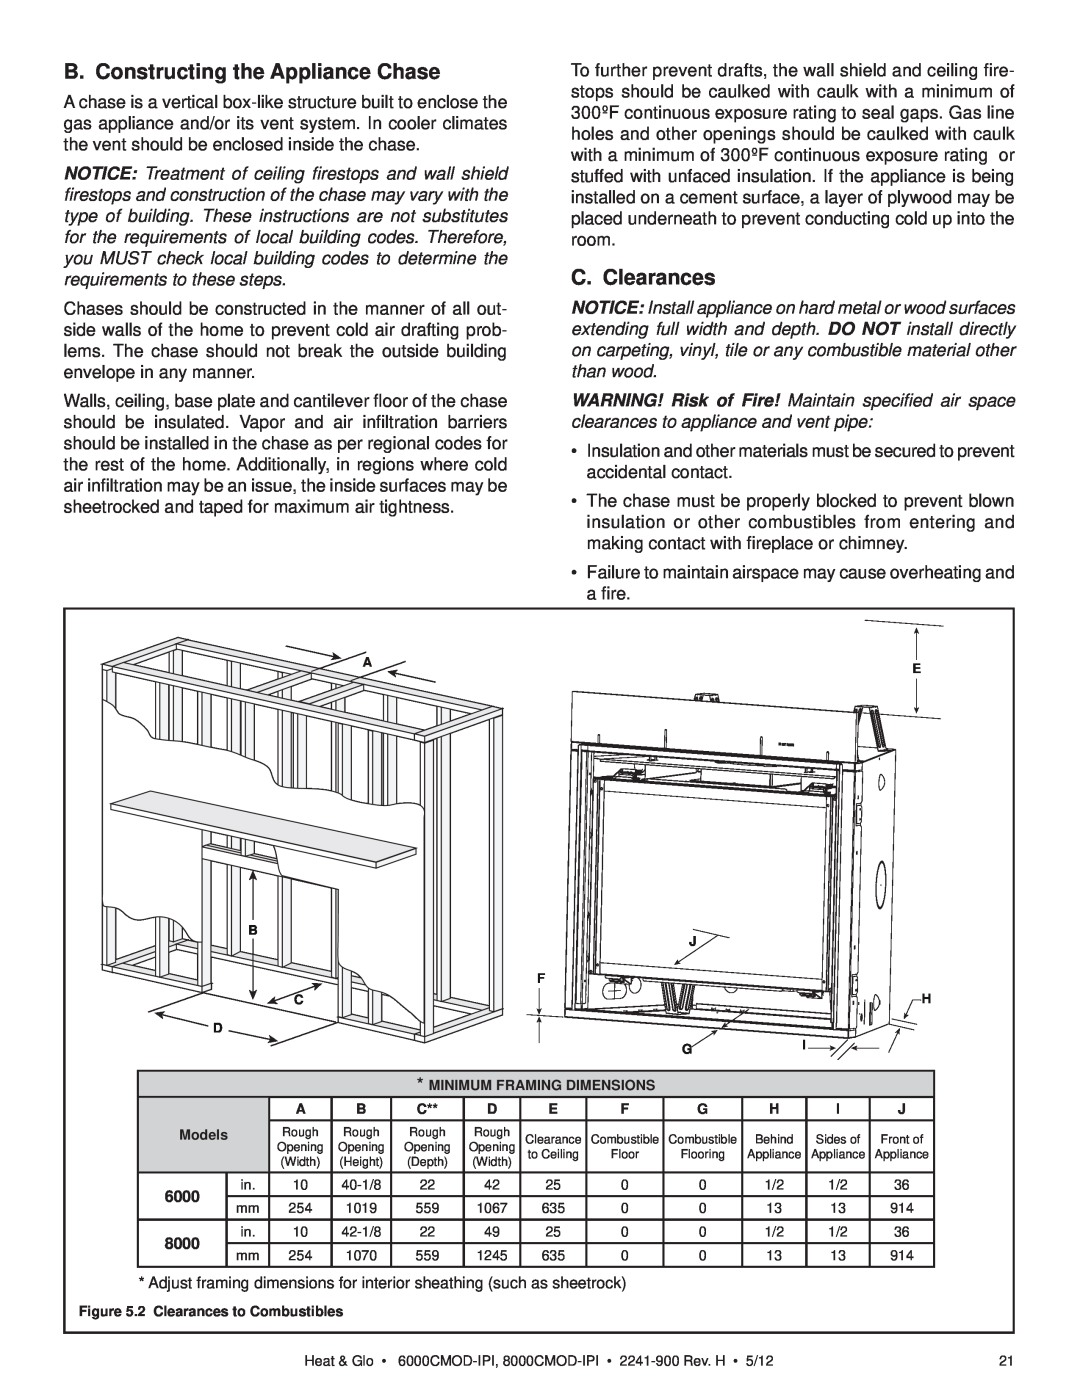 Heat & Glo LifeStyle 6000CMOD-IPI, 8000CMOD-IPI owner manual B. Constructing the Appliance Chase, C. Clearances 